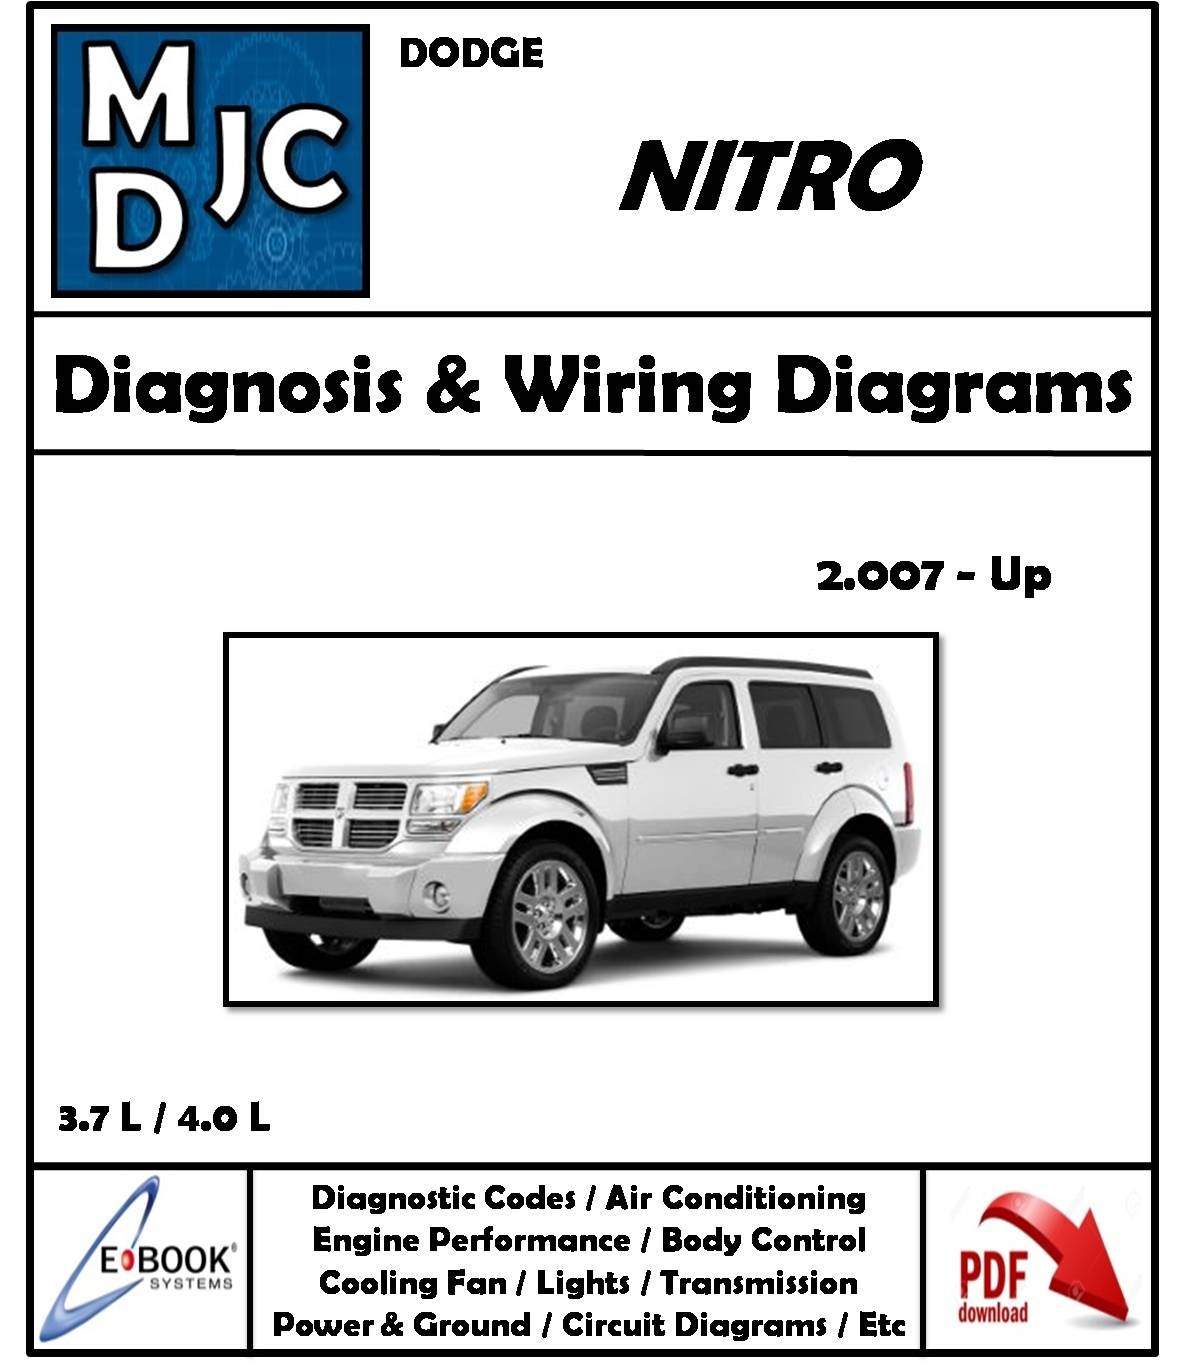 Dodge Nitro 2007-Up